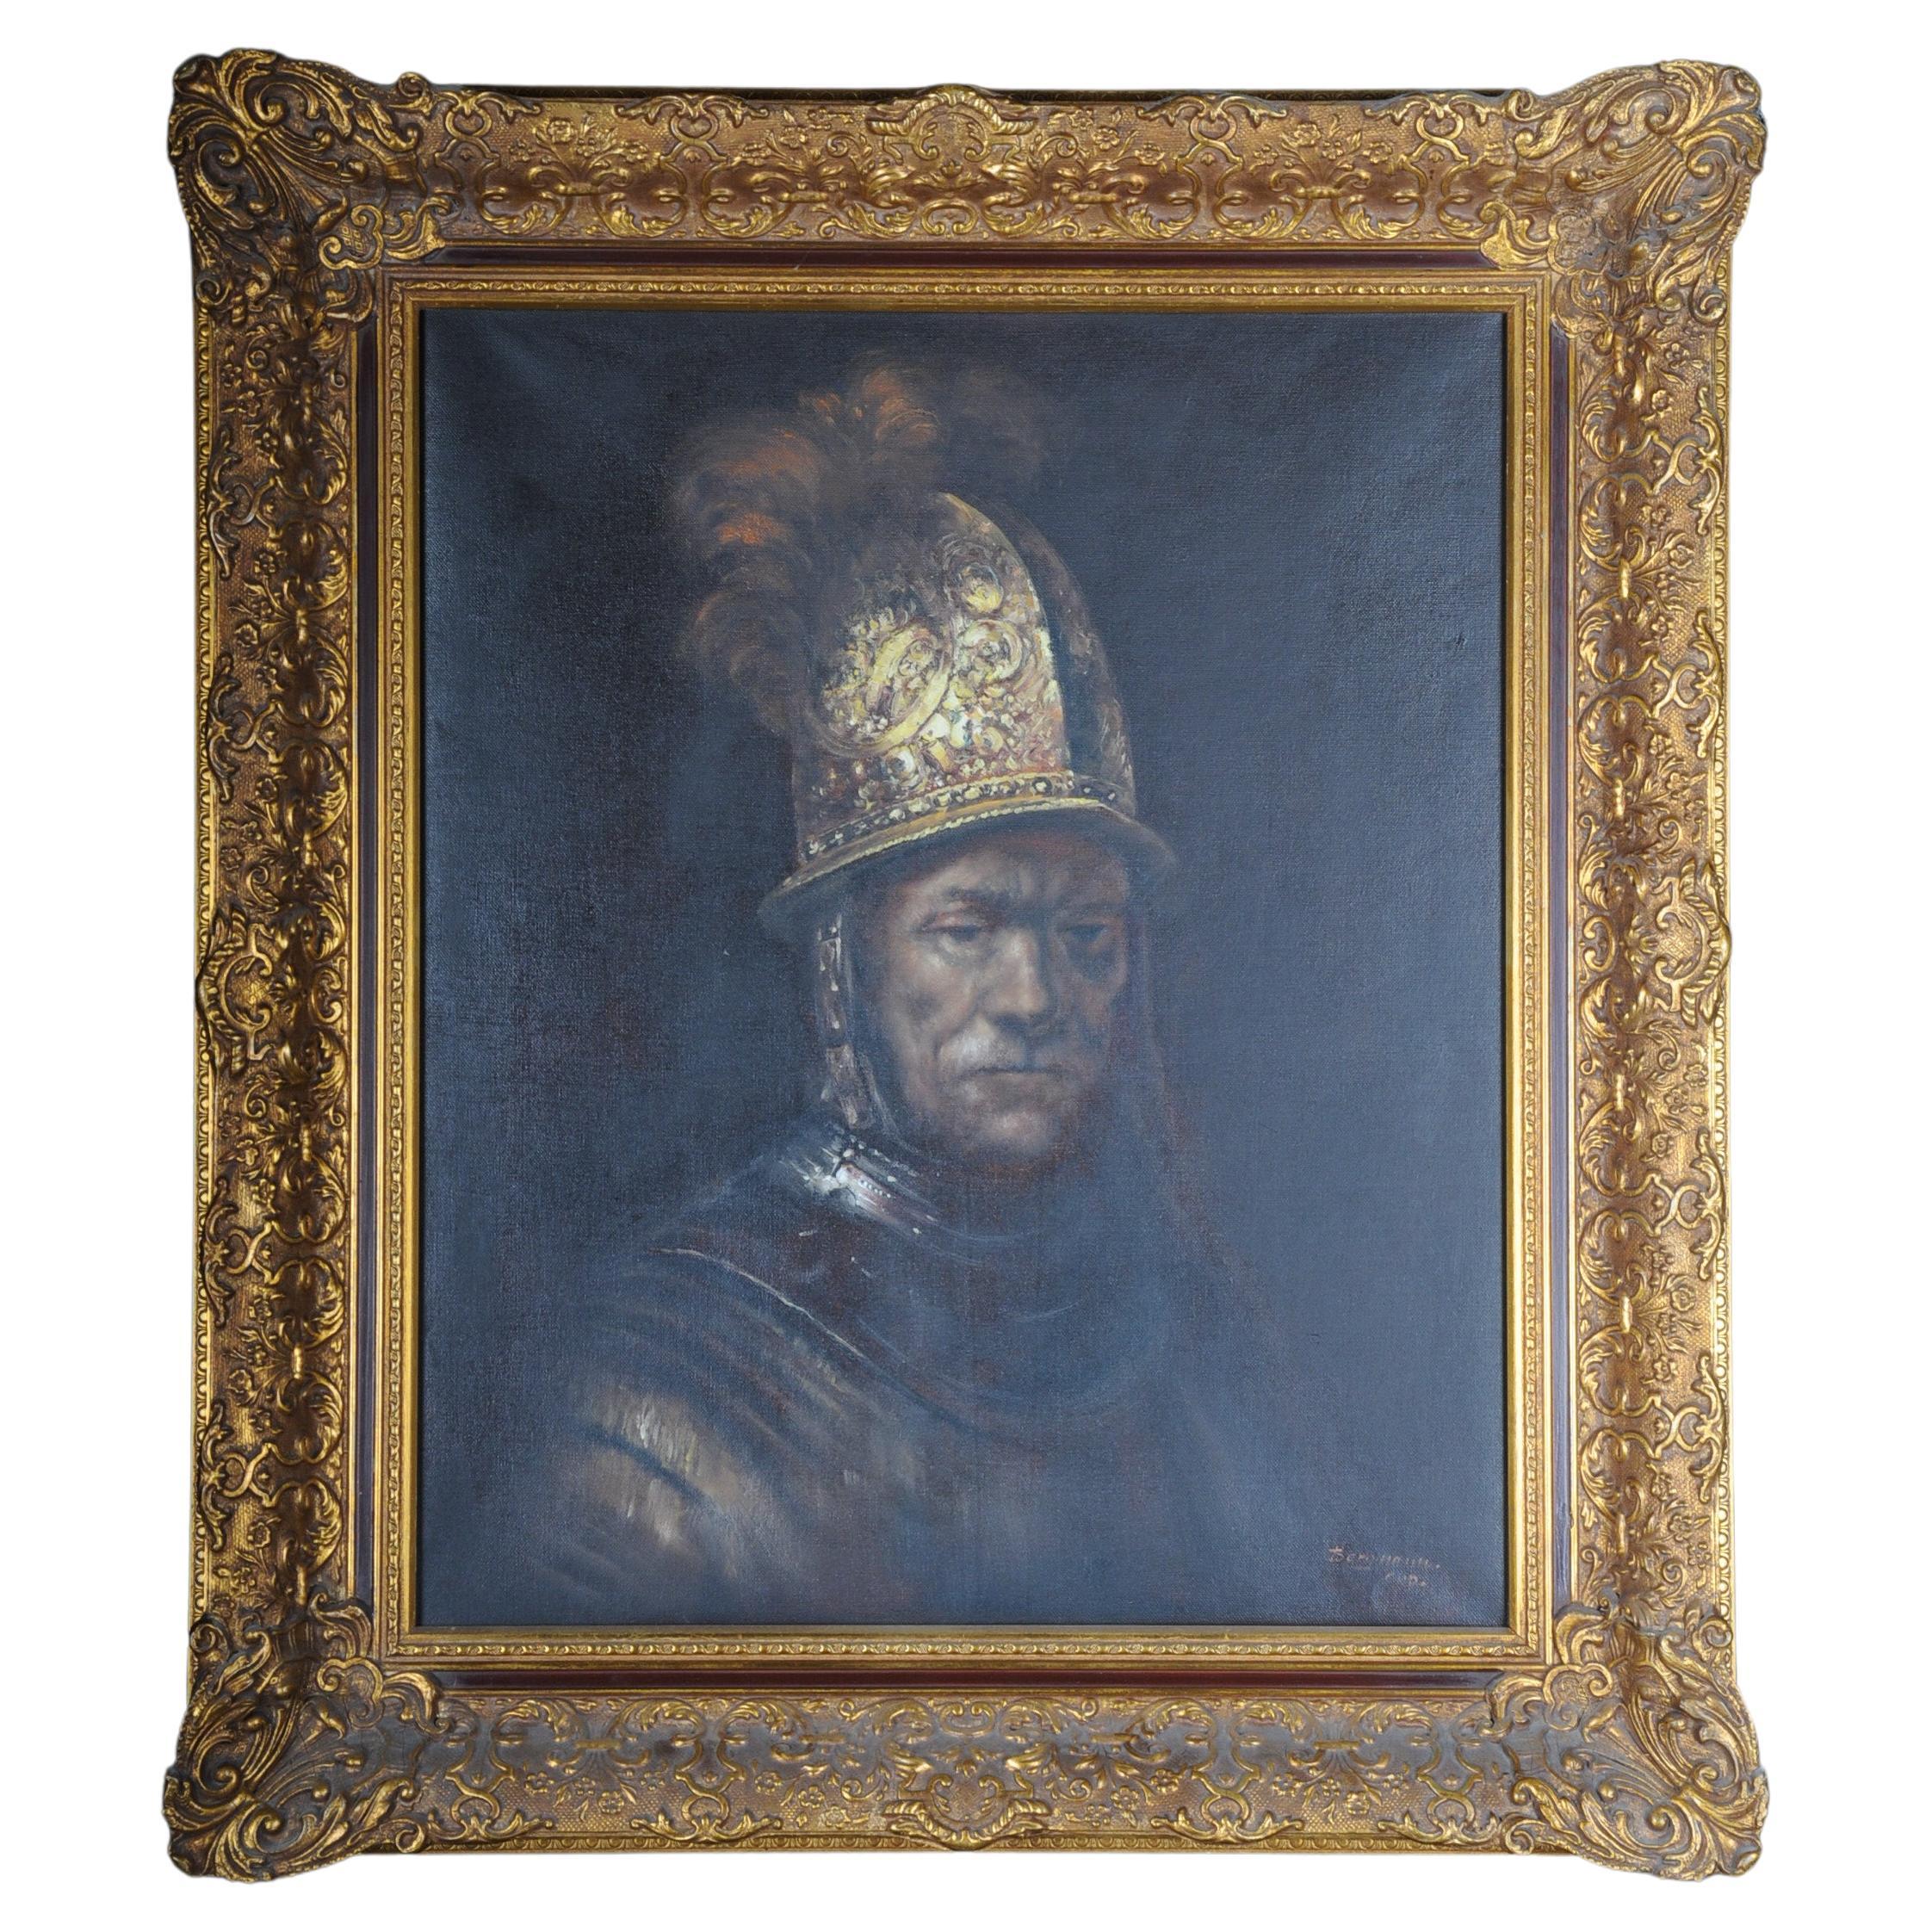 Oil Painting "The Man in the Gold Helmet" Rembrandt van Rijn